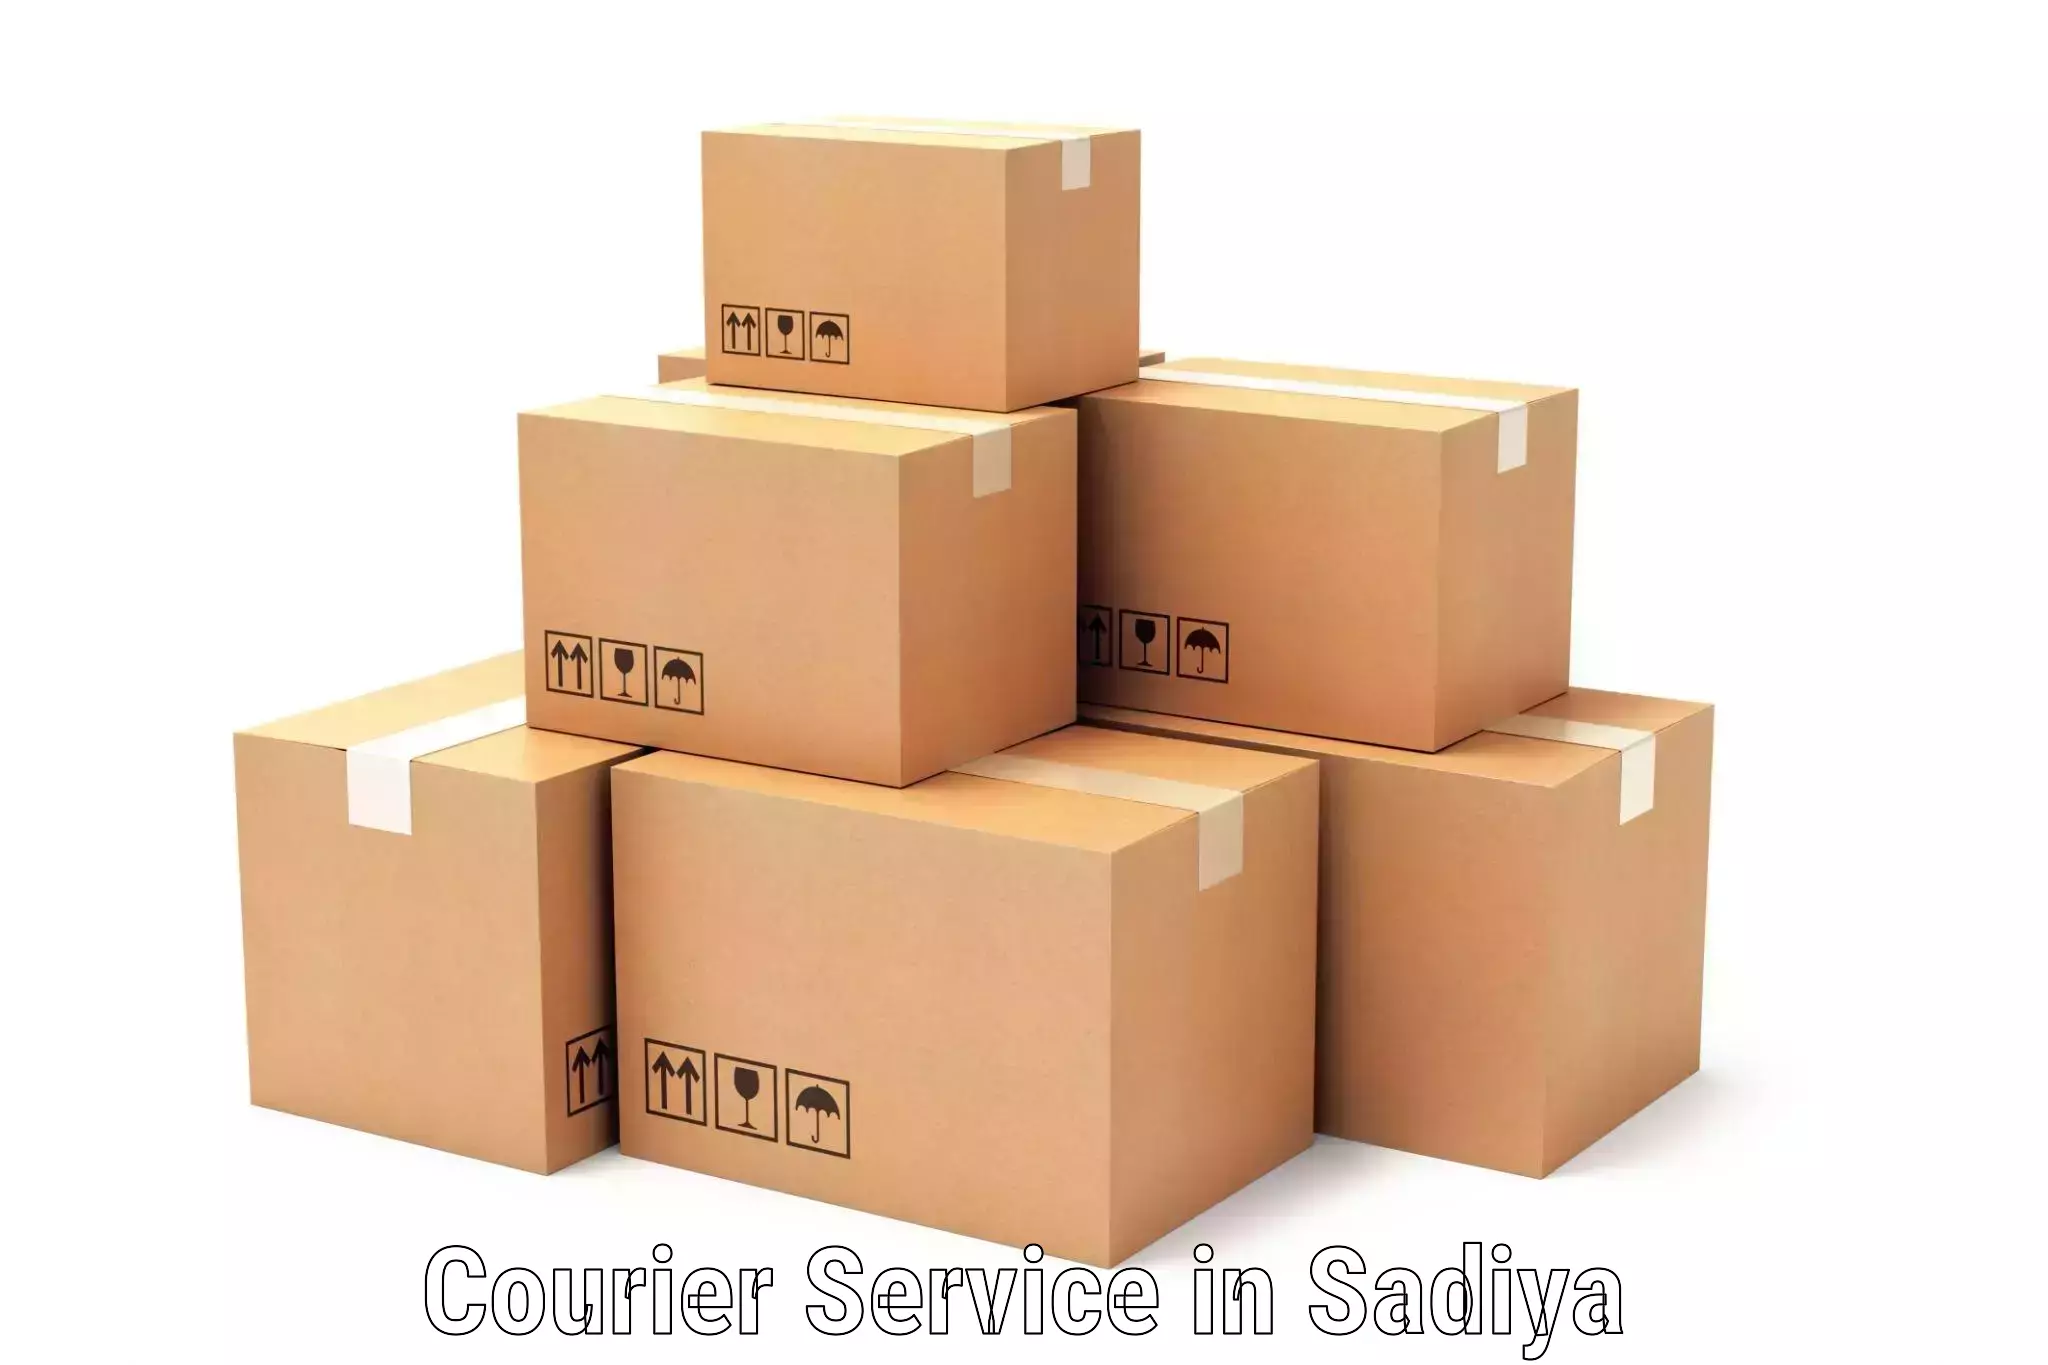 High value parcel delivery in Sadiya